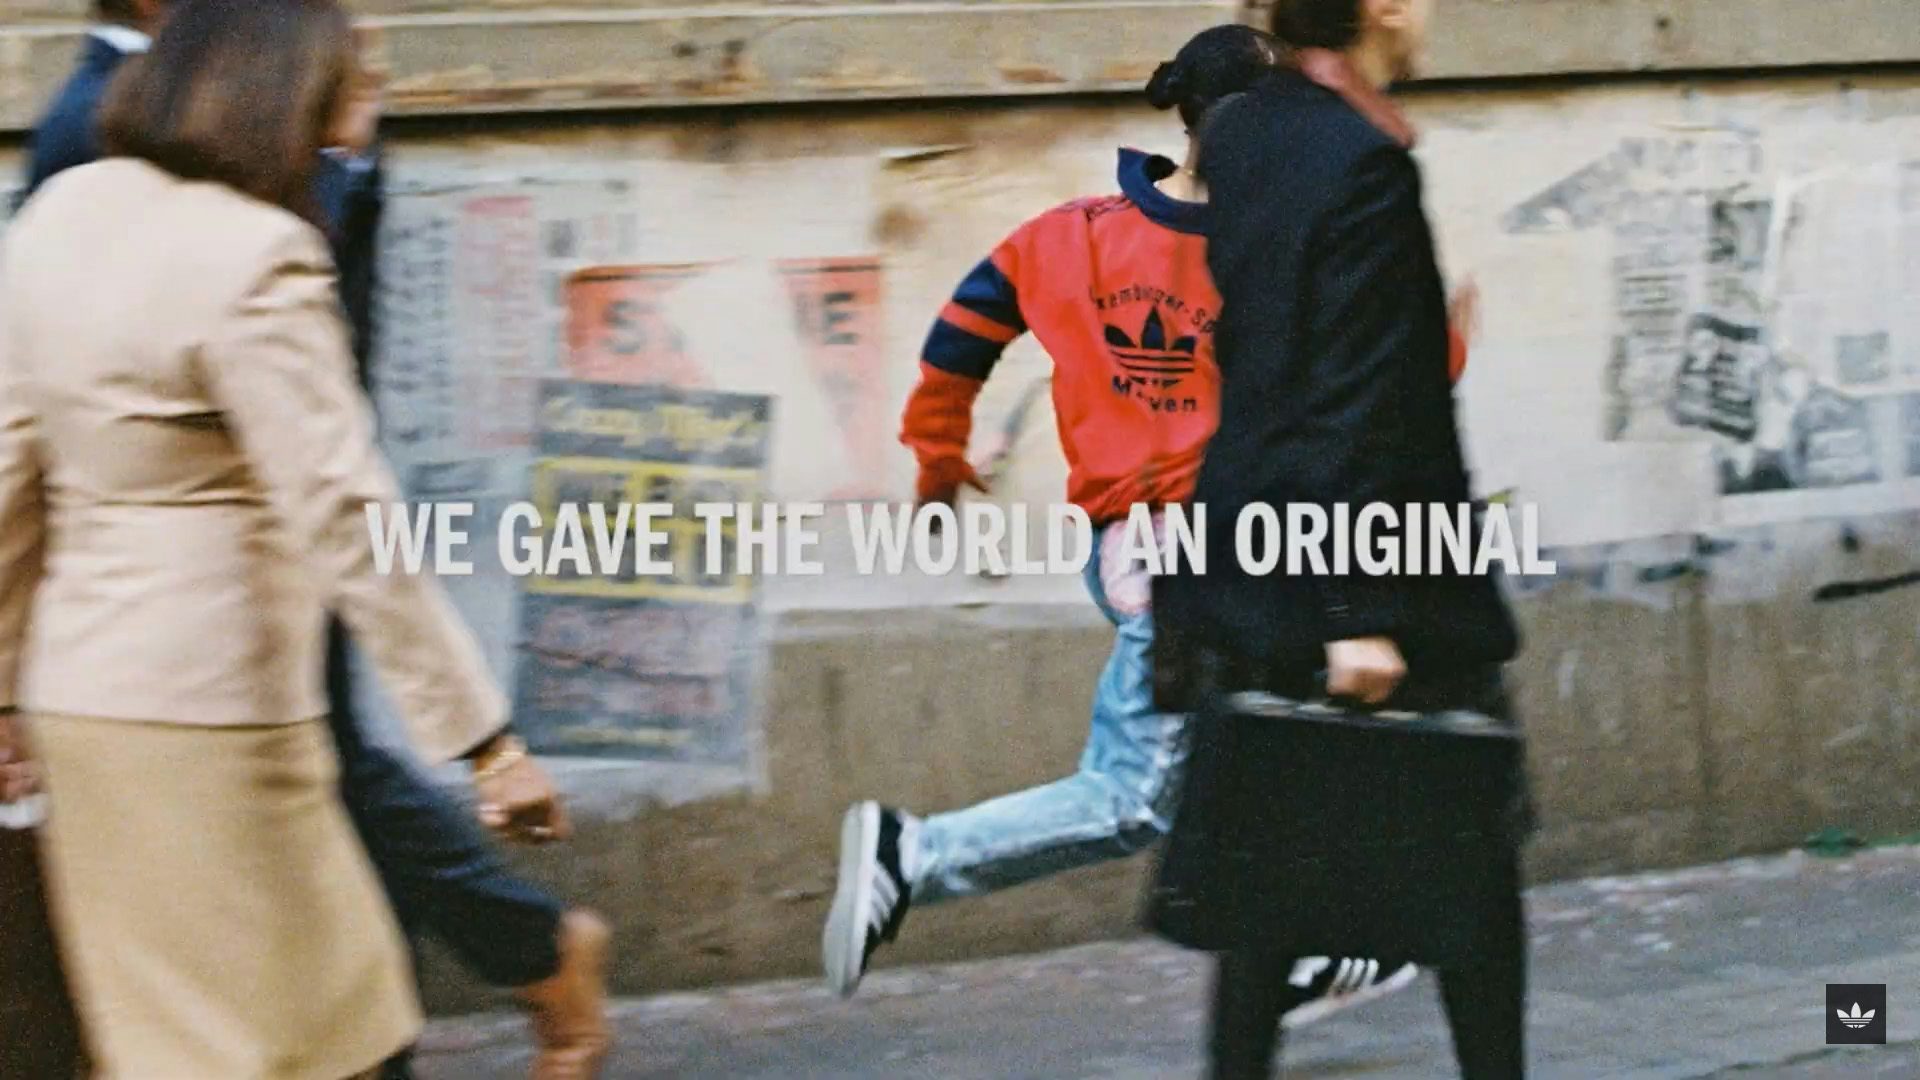 Adidas celebrates the originals in its